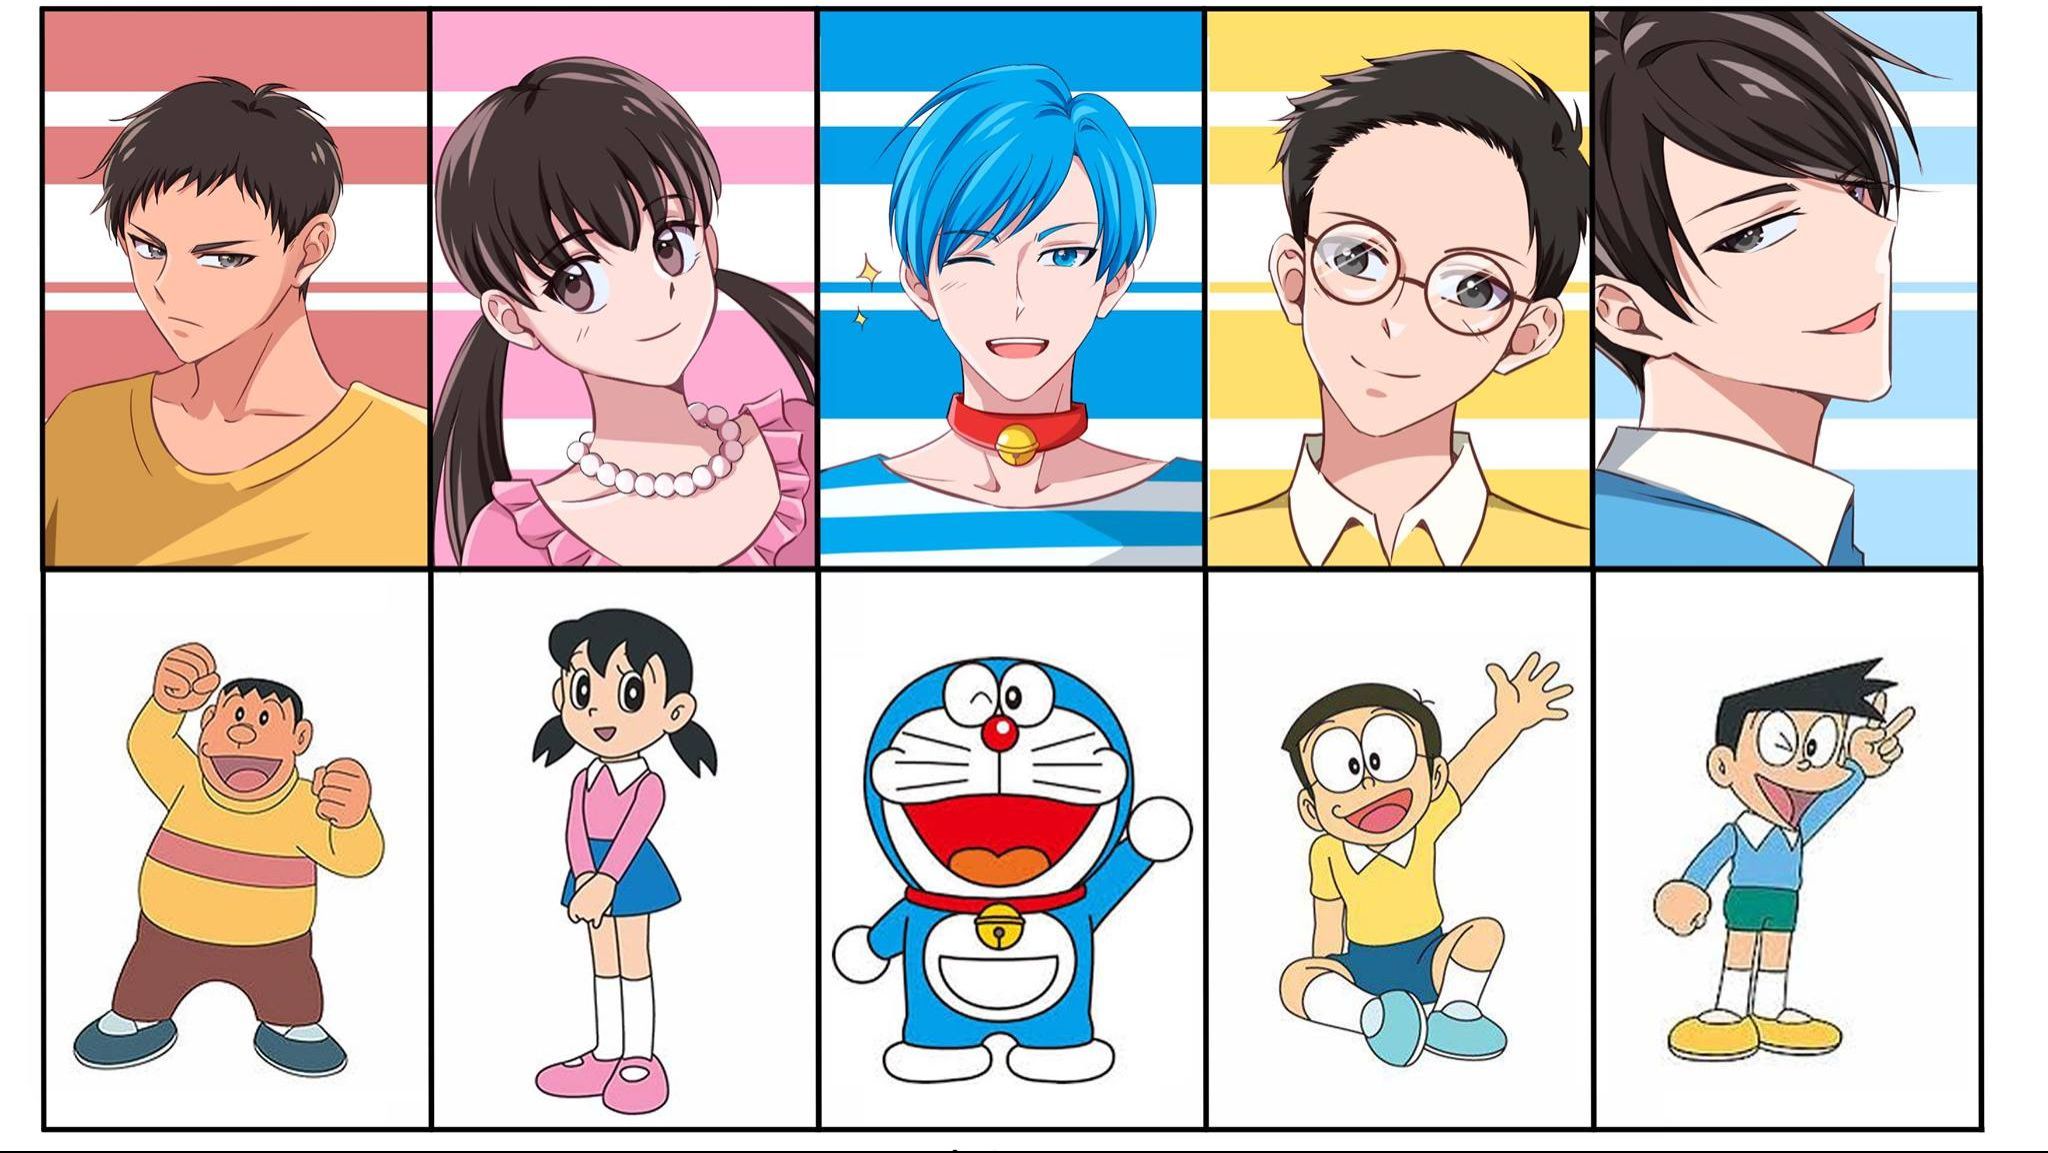 Bộ sưu tập hình ảnh nhân vật Boy/Girl Anime với Doraemon sẽ làm say đắm trái tim bạn. Với những tạo hình đầy sáng tạo, nhân vật Doraemon được thể hiện với phong cách riêng, tạo nên những hình ảnh tuyệt đẹp. Hãy cùng khám phá bức hình này và tìm hiểu xem Doraemon sẽ như thế nào khi được thể hiện dưới dạng Boy/Girl Anime nhé!